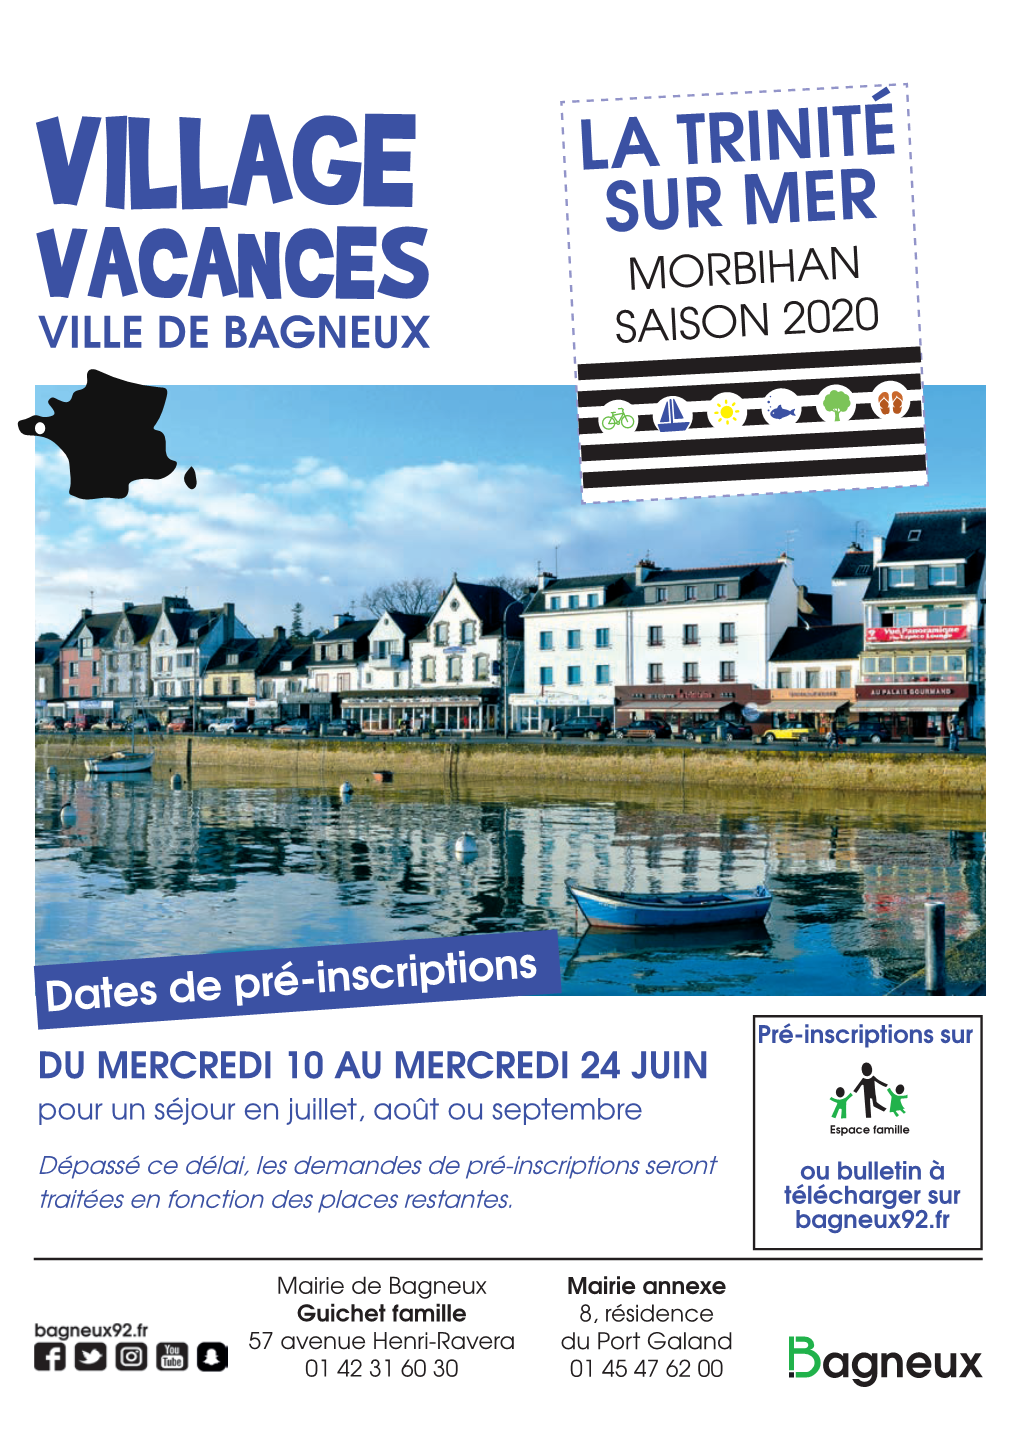 Village Sur Mer Vacances Morbihan Ville De Bagneux Saison 2020